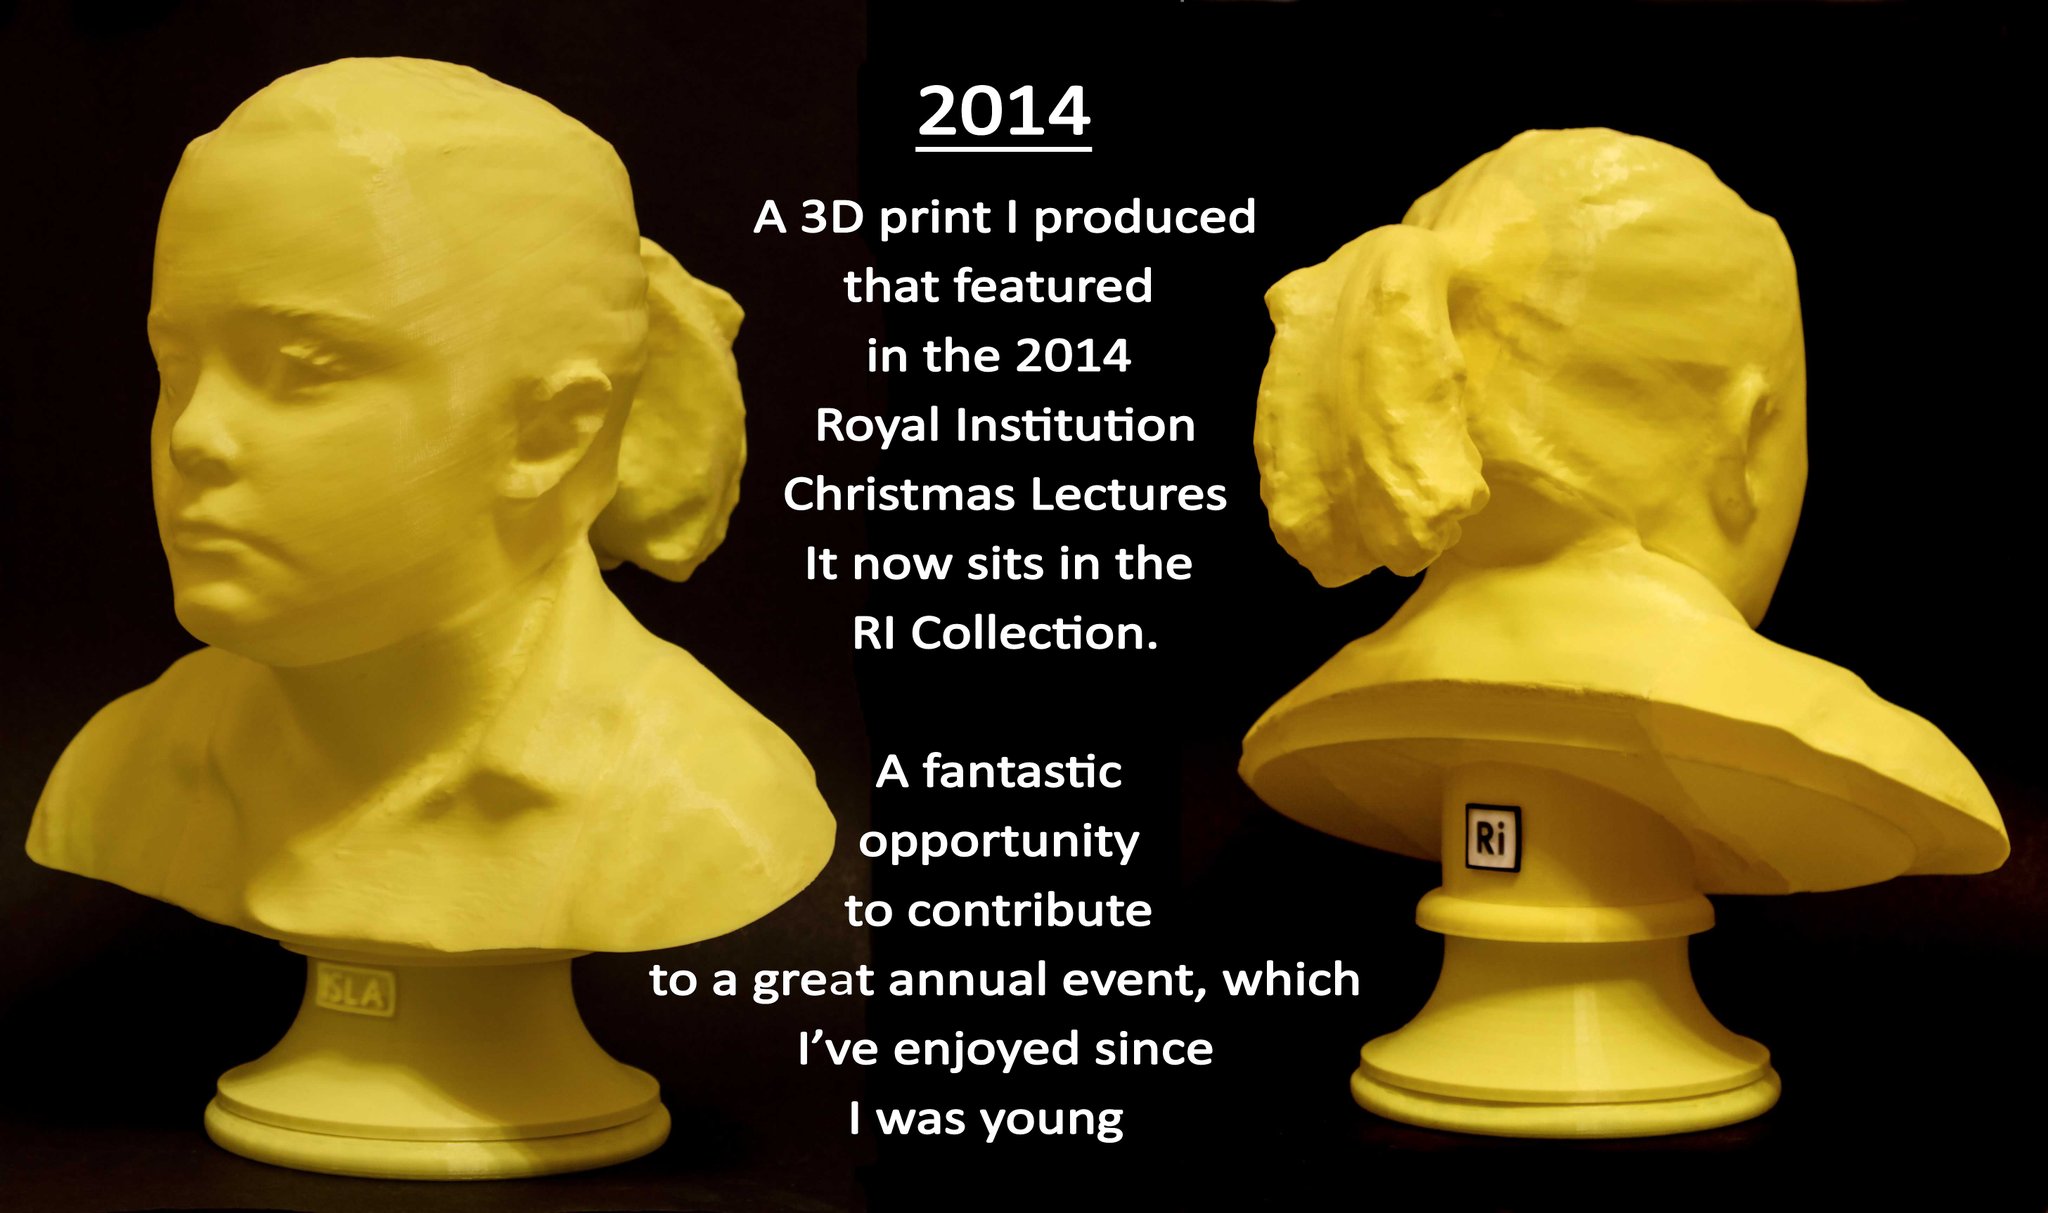 Check Sean Hodgin's 3D-Printed Ornament That 3D Prints Tiny Ornaments -  Make